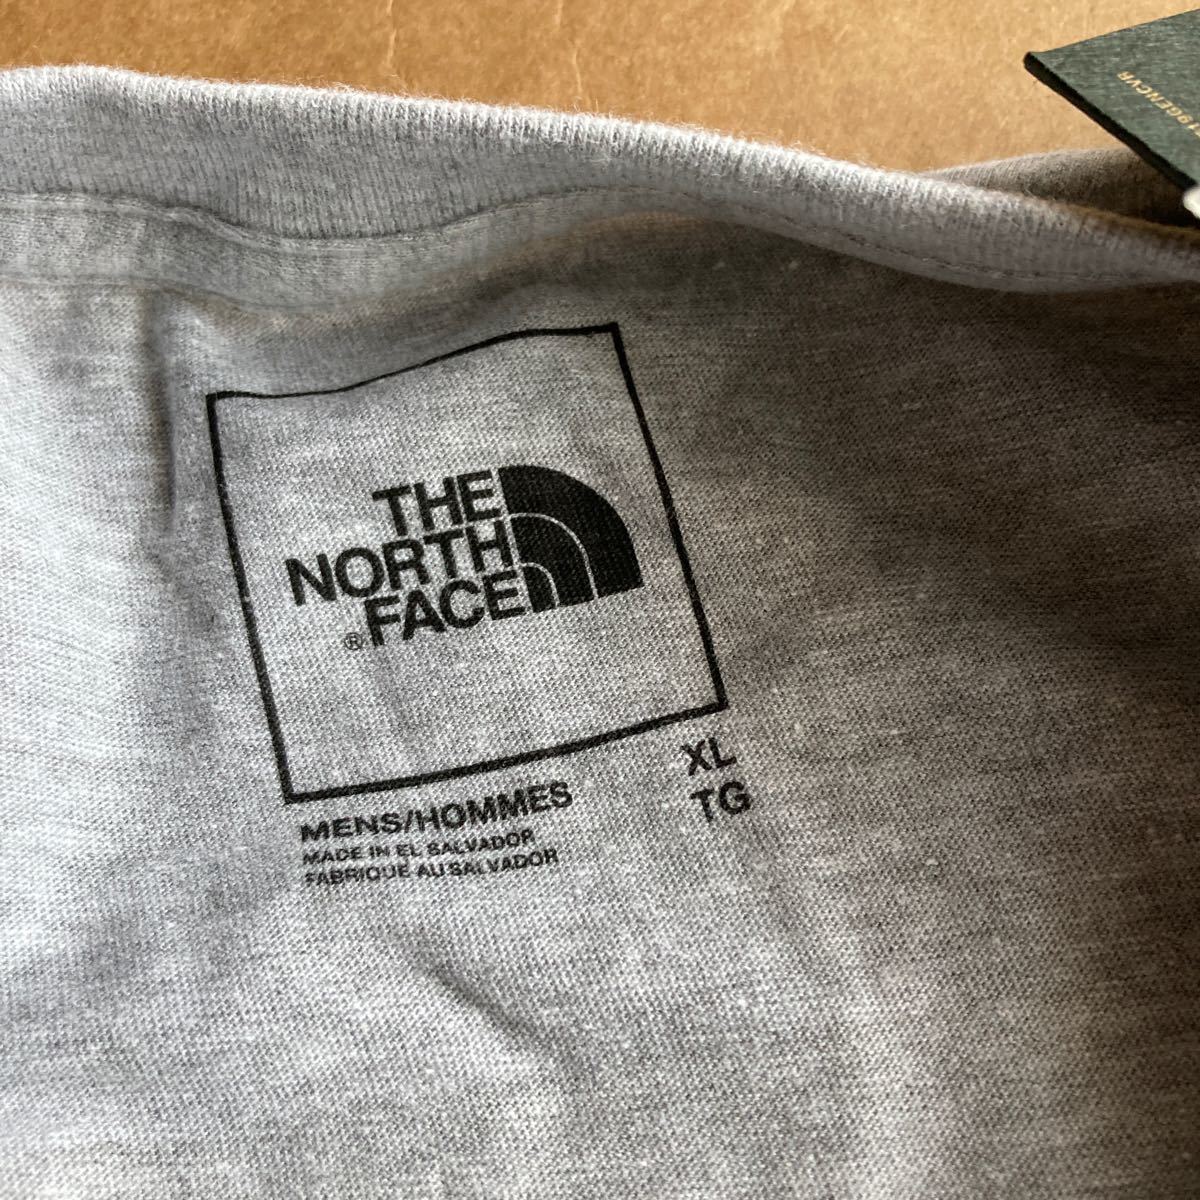 日本未入荷 THE NORTH FACE ザノースフェイス メンズ tシャツ XL XXL 2L アメリカサイズ 